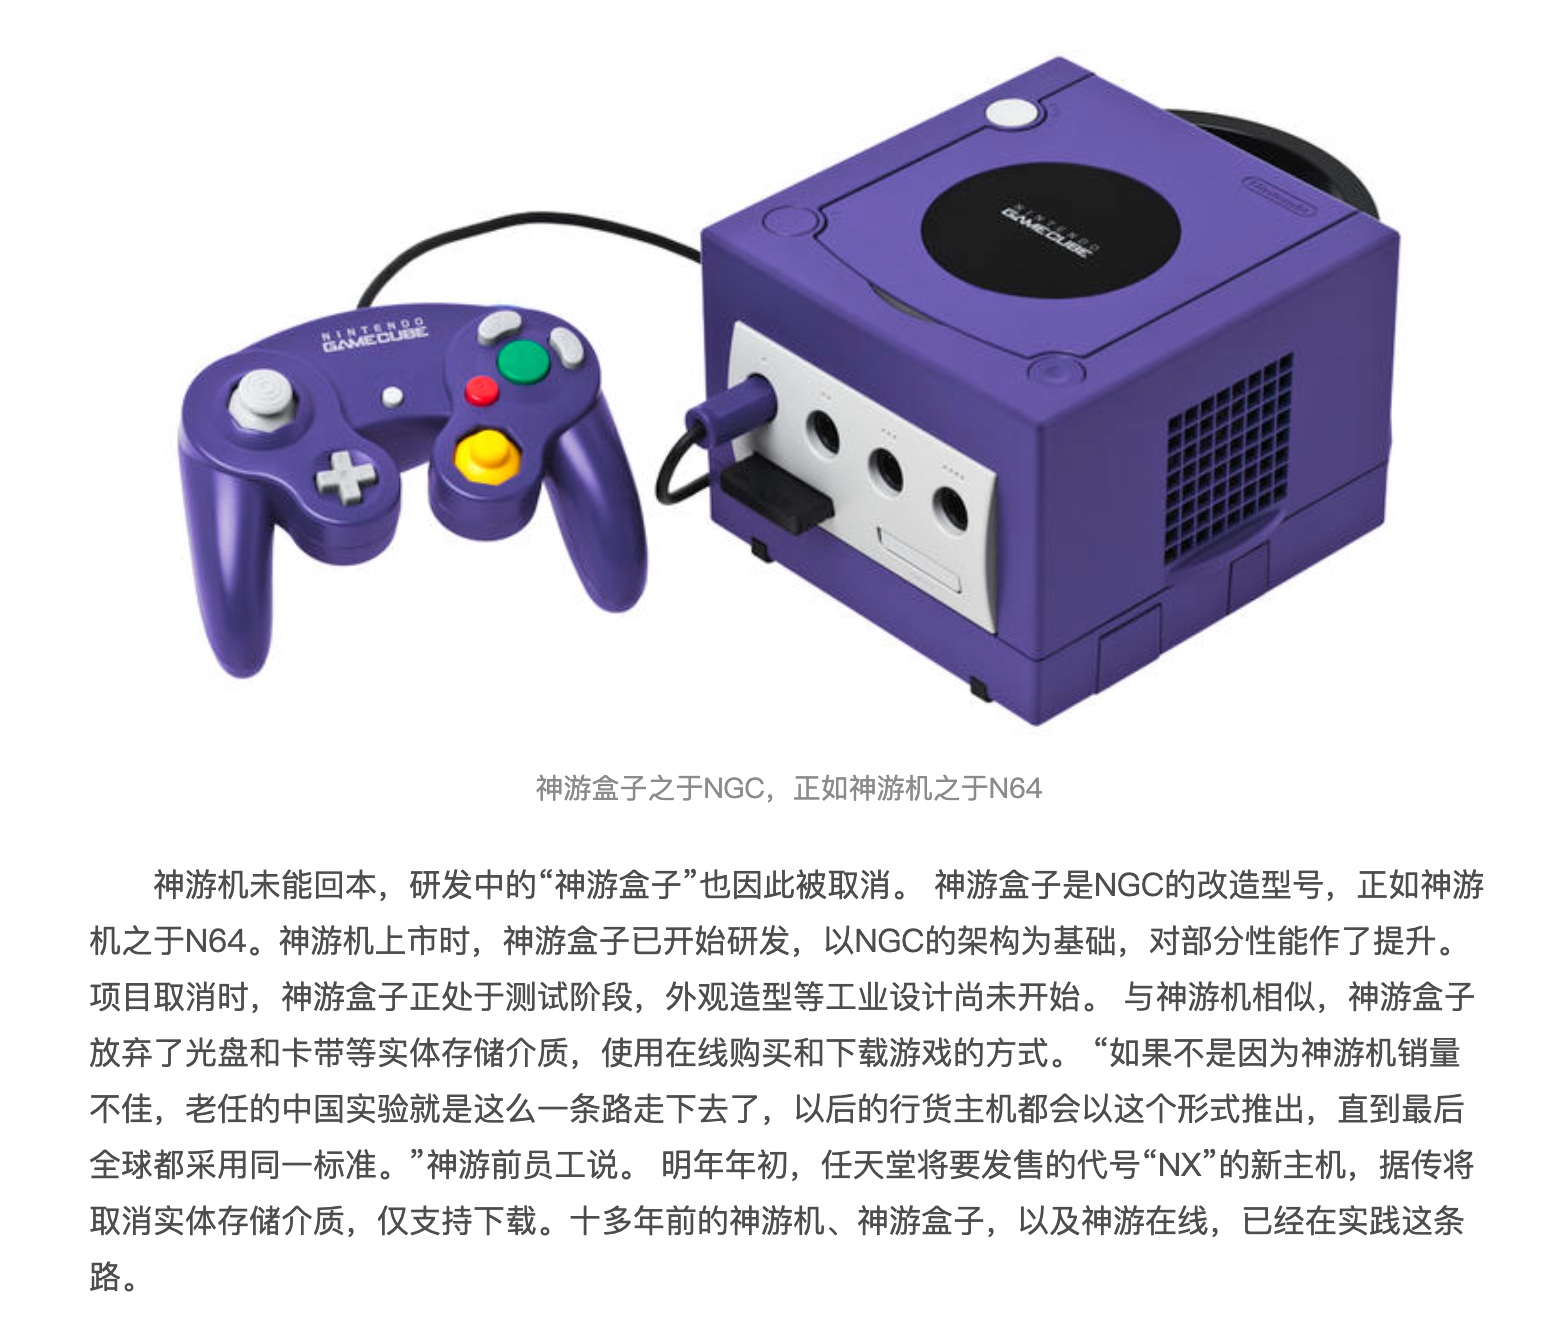 GameCube китайская статья